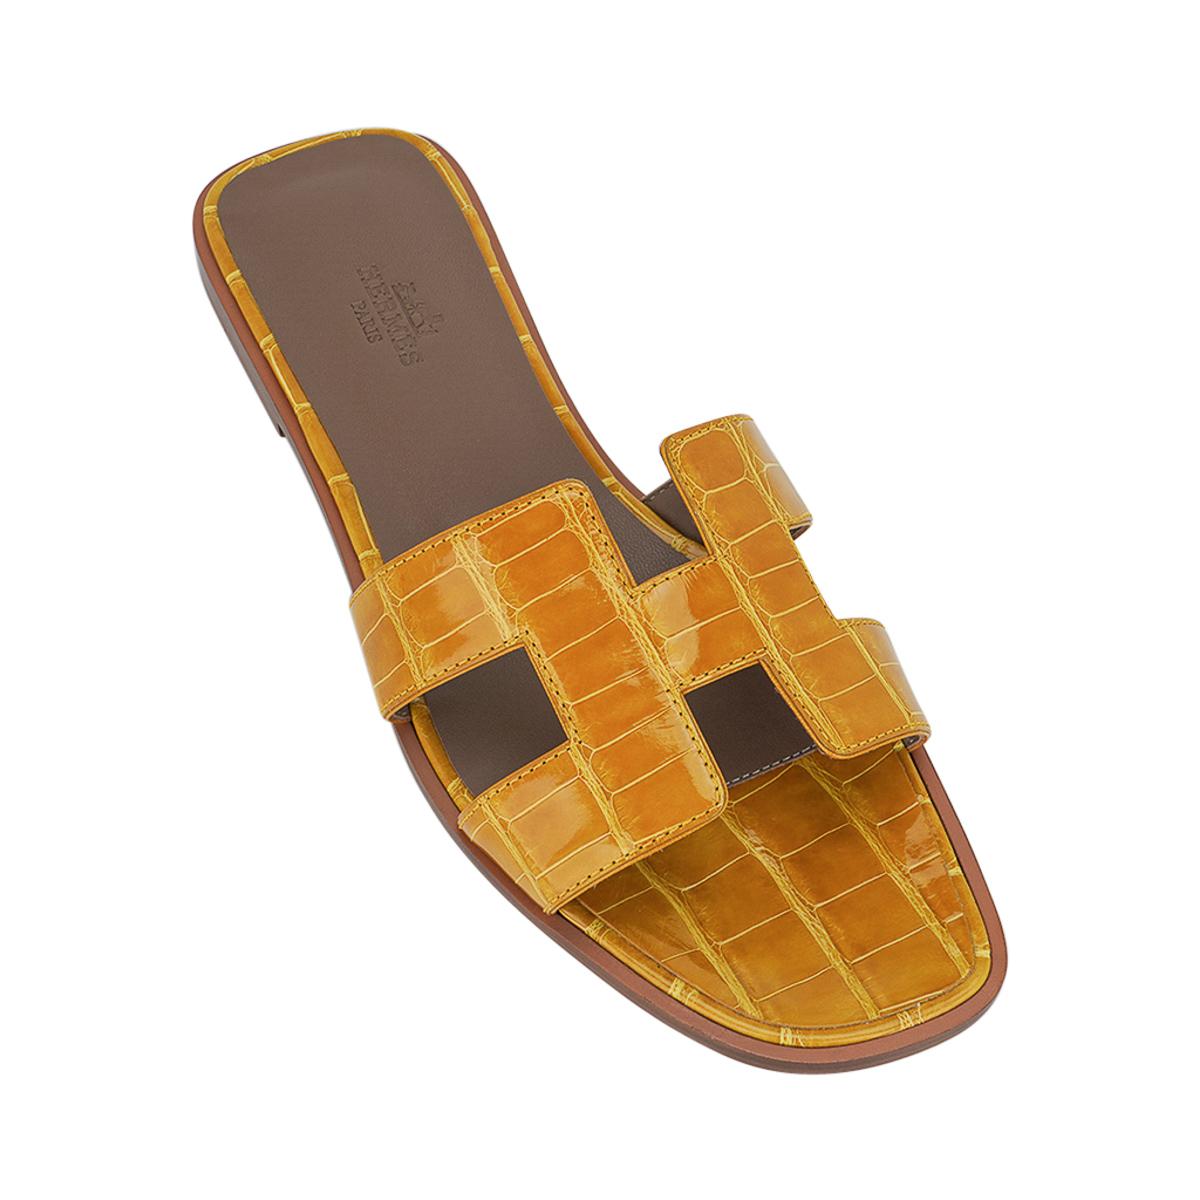 Mightychic propose des sandales Hermes Oran en Alligator Jaune Ambre.
Cette superbe édition limitée de la sandale plate Oran d'Hermès est d'un jaune chaud et mielleux.
L'emblématique découpe en H sur le dessus du pied.
Semelle intérieure en cuir de